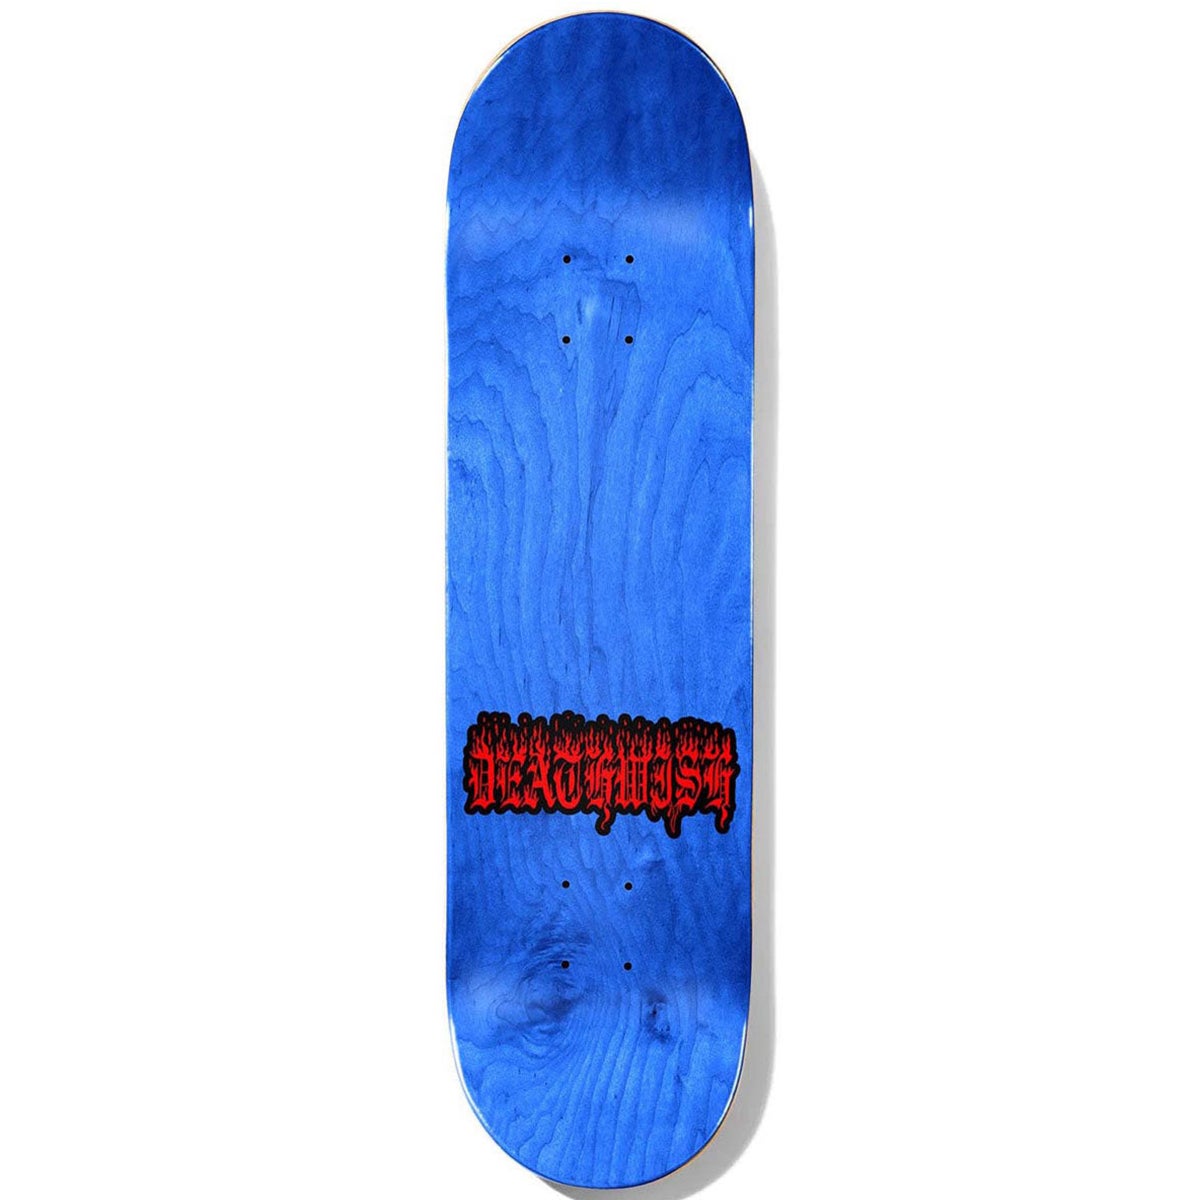 される】 Deathwish Attitude Skateboard Deck 8.0 x 31.5 cm 並行輸入品  :BIRMXXAMB086JZKM1M:バーミンガム・エクスプレス 通販 がある